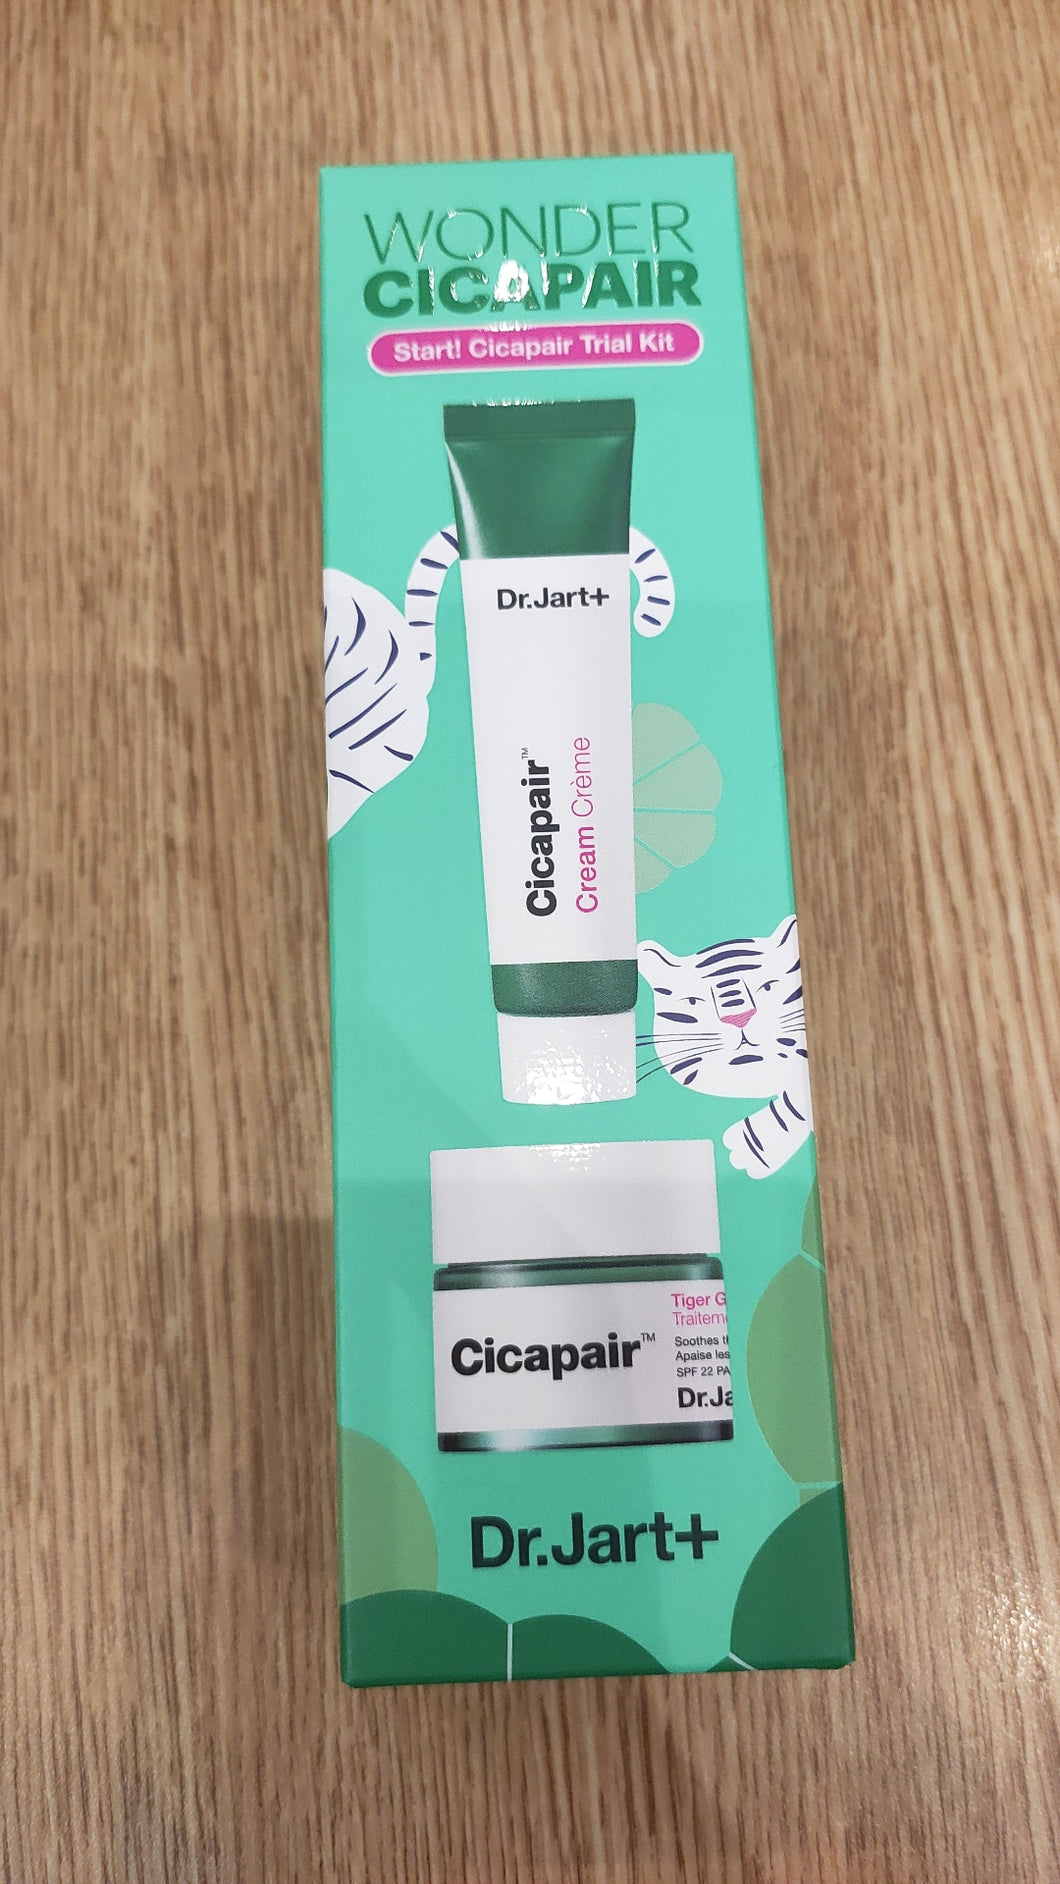 Cicapair trial kit